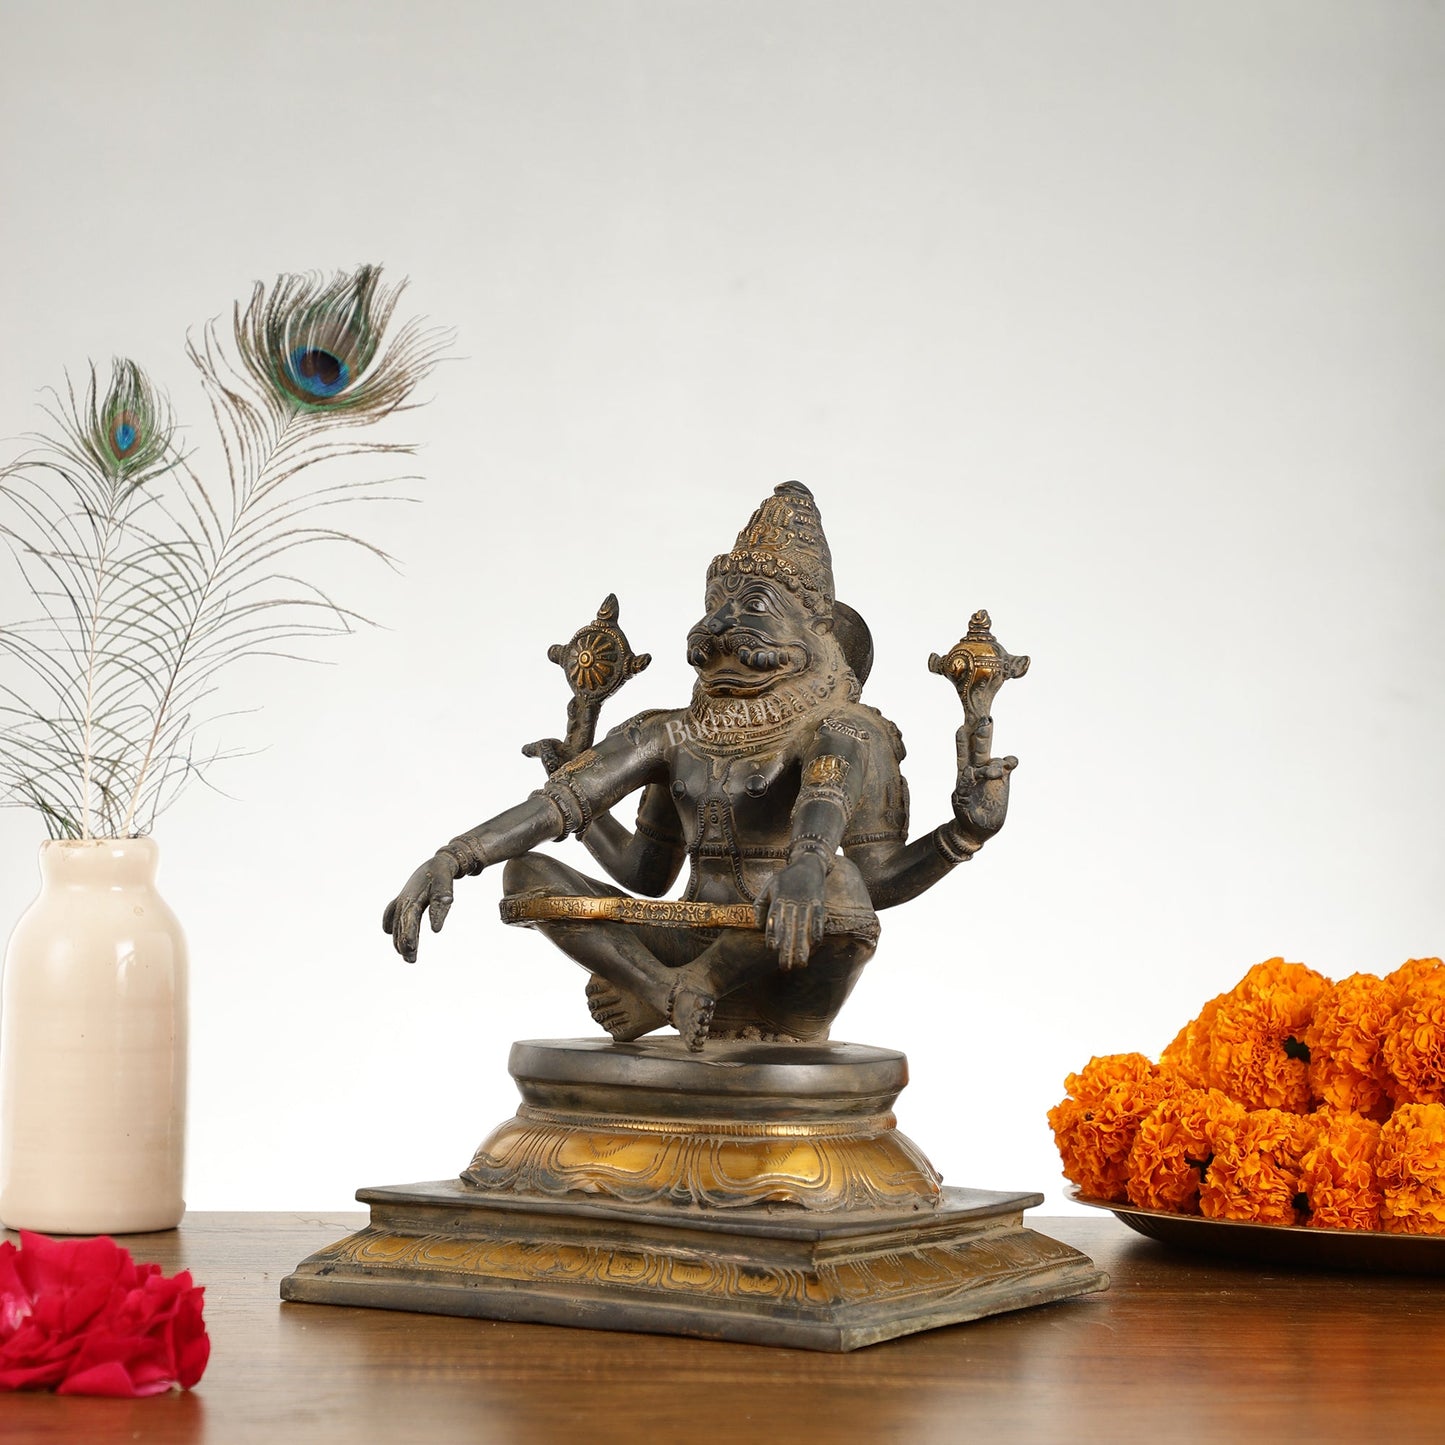 Brass Yog Narsimha Statue 11" - Budhshiv.com